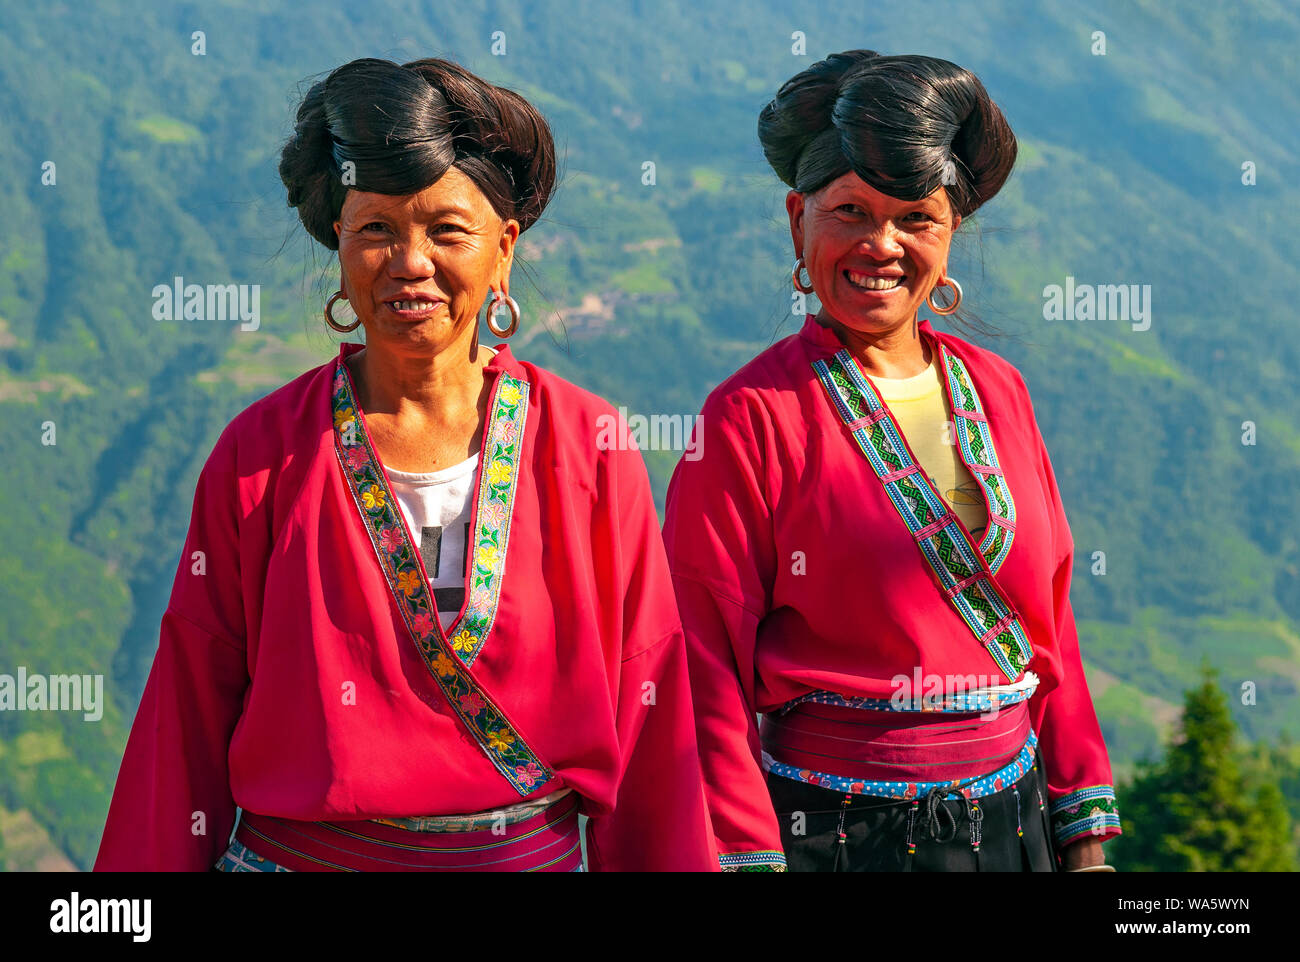 Les femmes aux cheveux longs souriant du groupe ethnique Yao par les rizières en terrasses de Longsheng Ping An dans la province du Guangxi, Chine. Banque D'Images